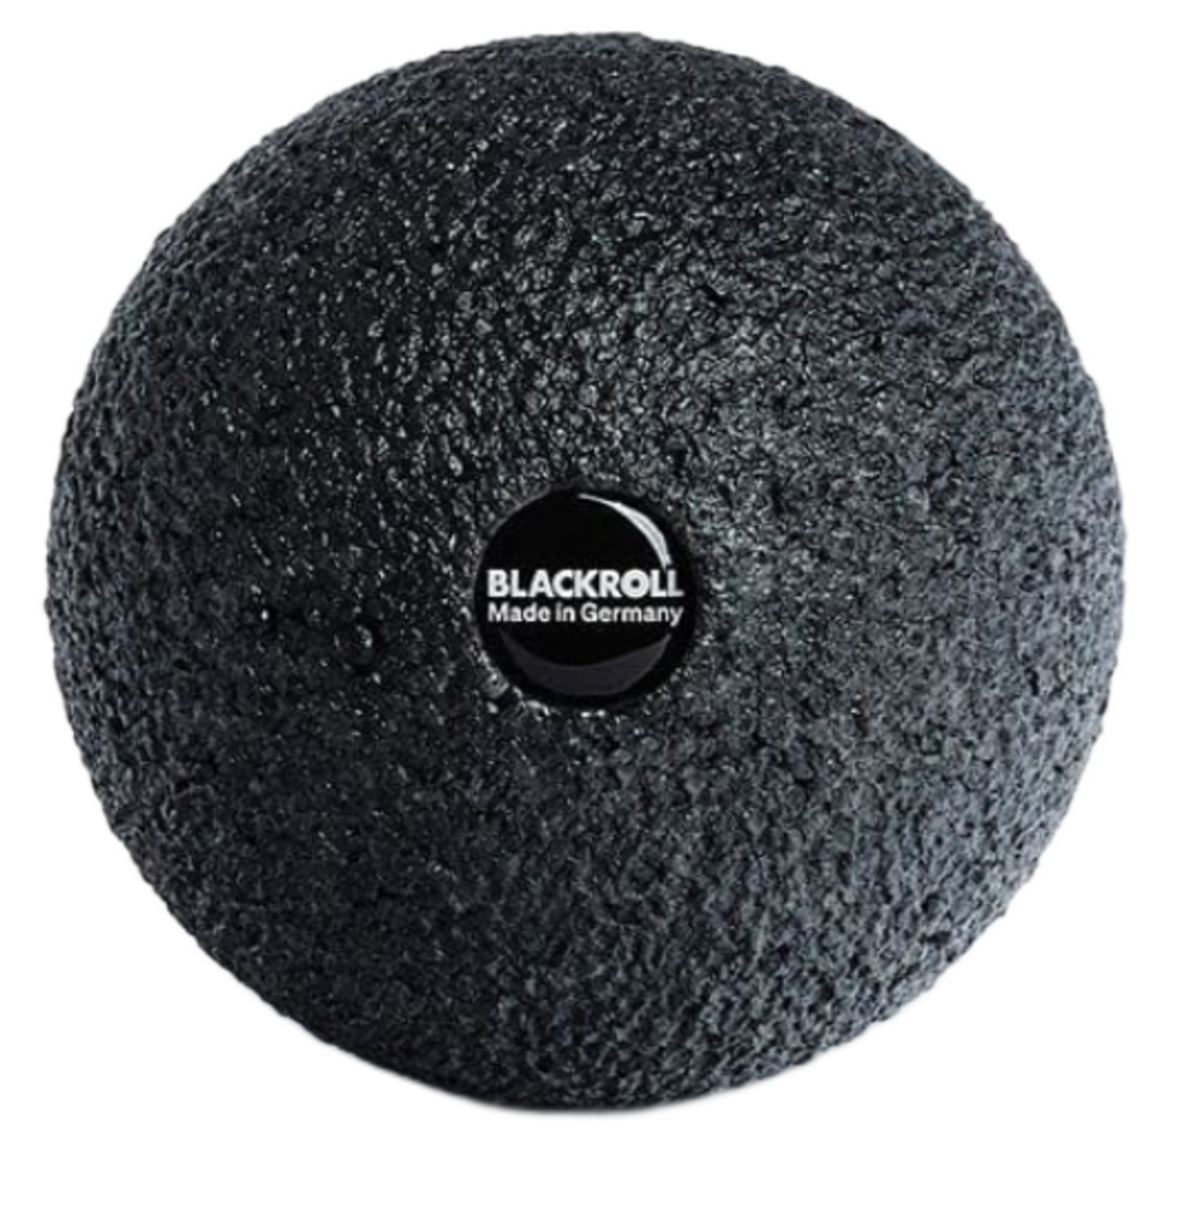 Blackroll Fascia Massage Ball 08CM in Black Color